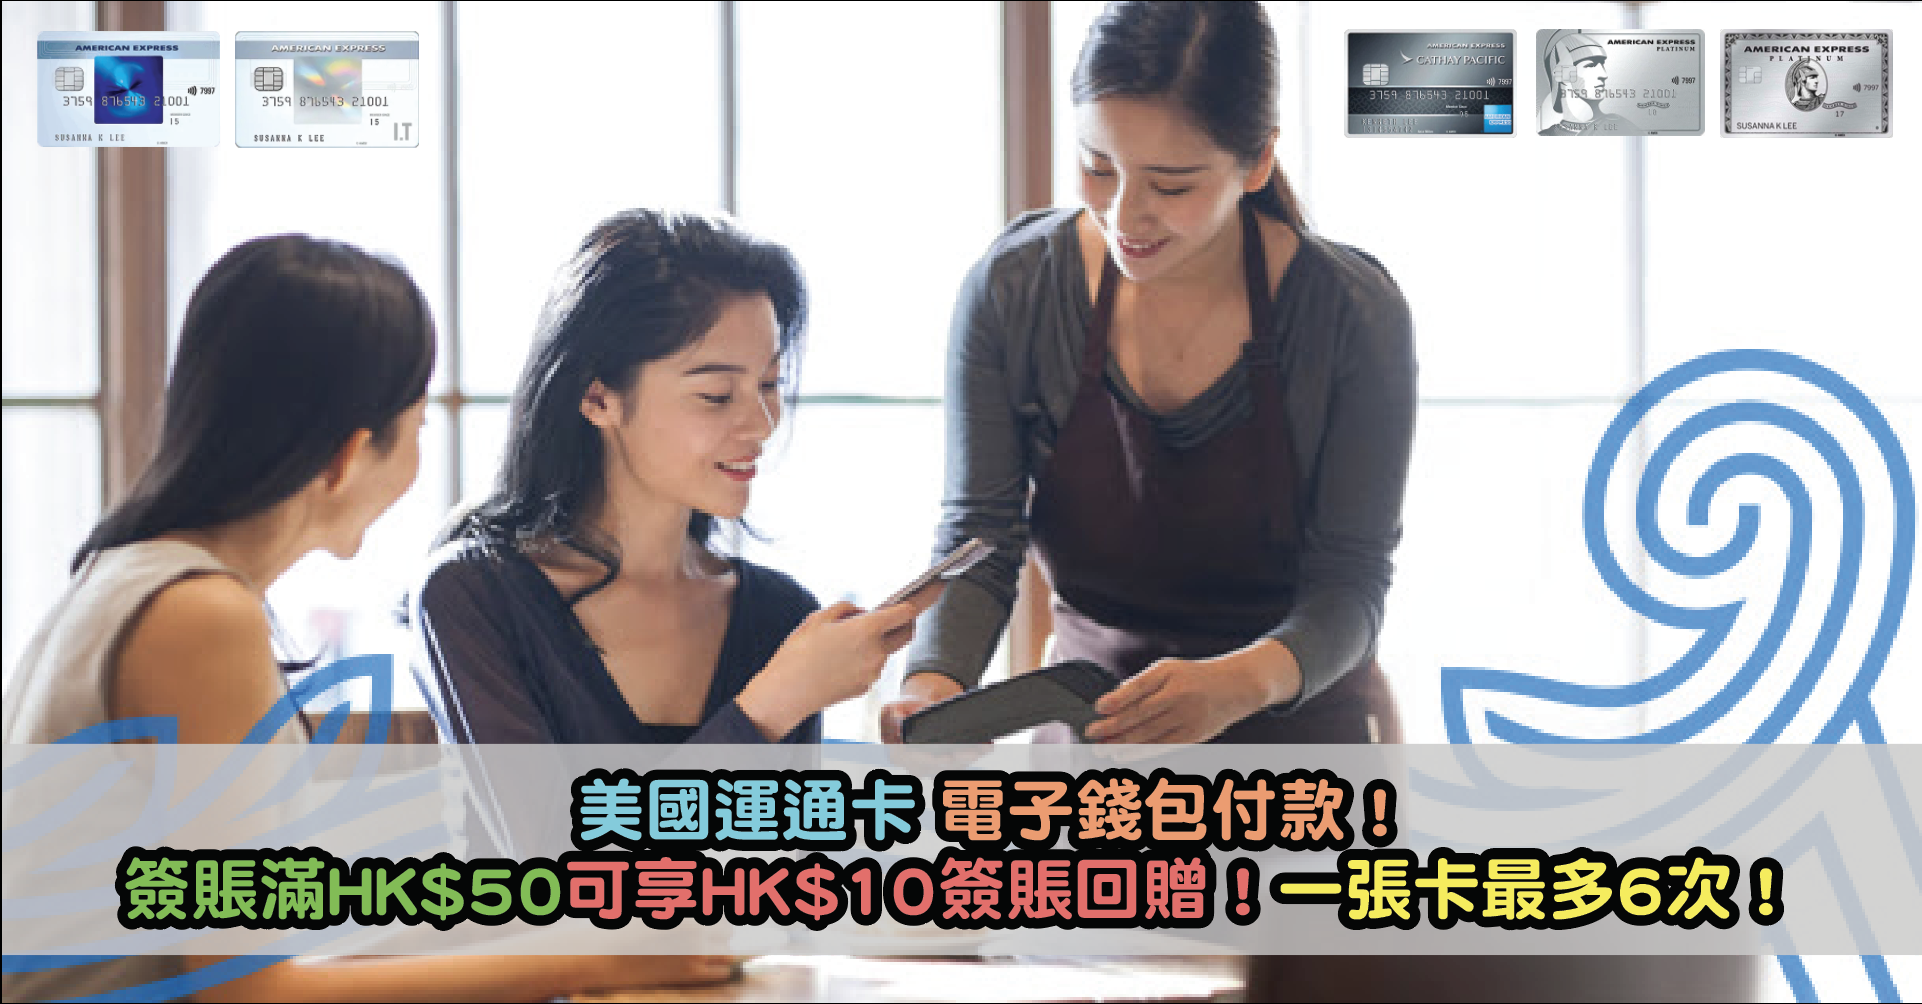 美國運通卡電子錢包付款優惠！簽賬滿HK$50可享HK$10簽賬回贈！一張卡最多6次！